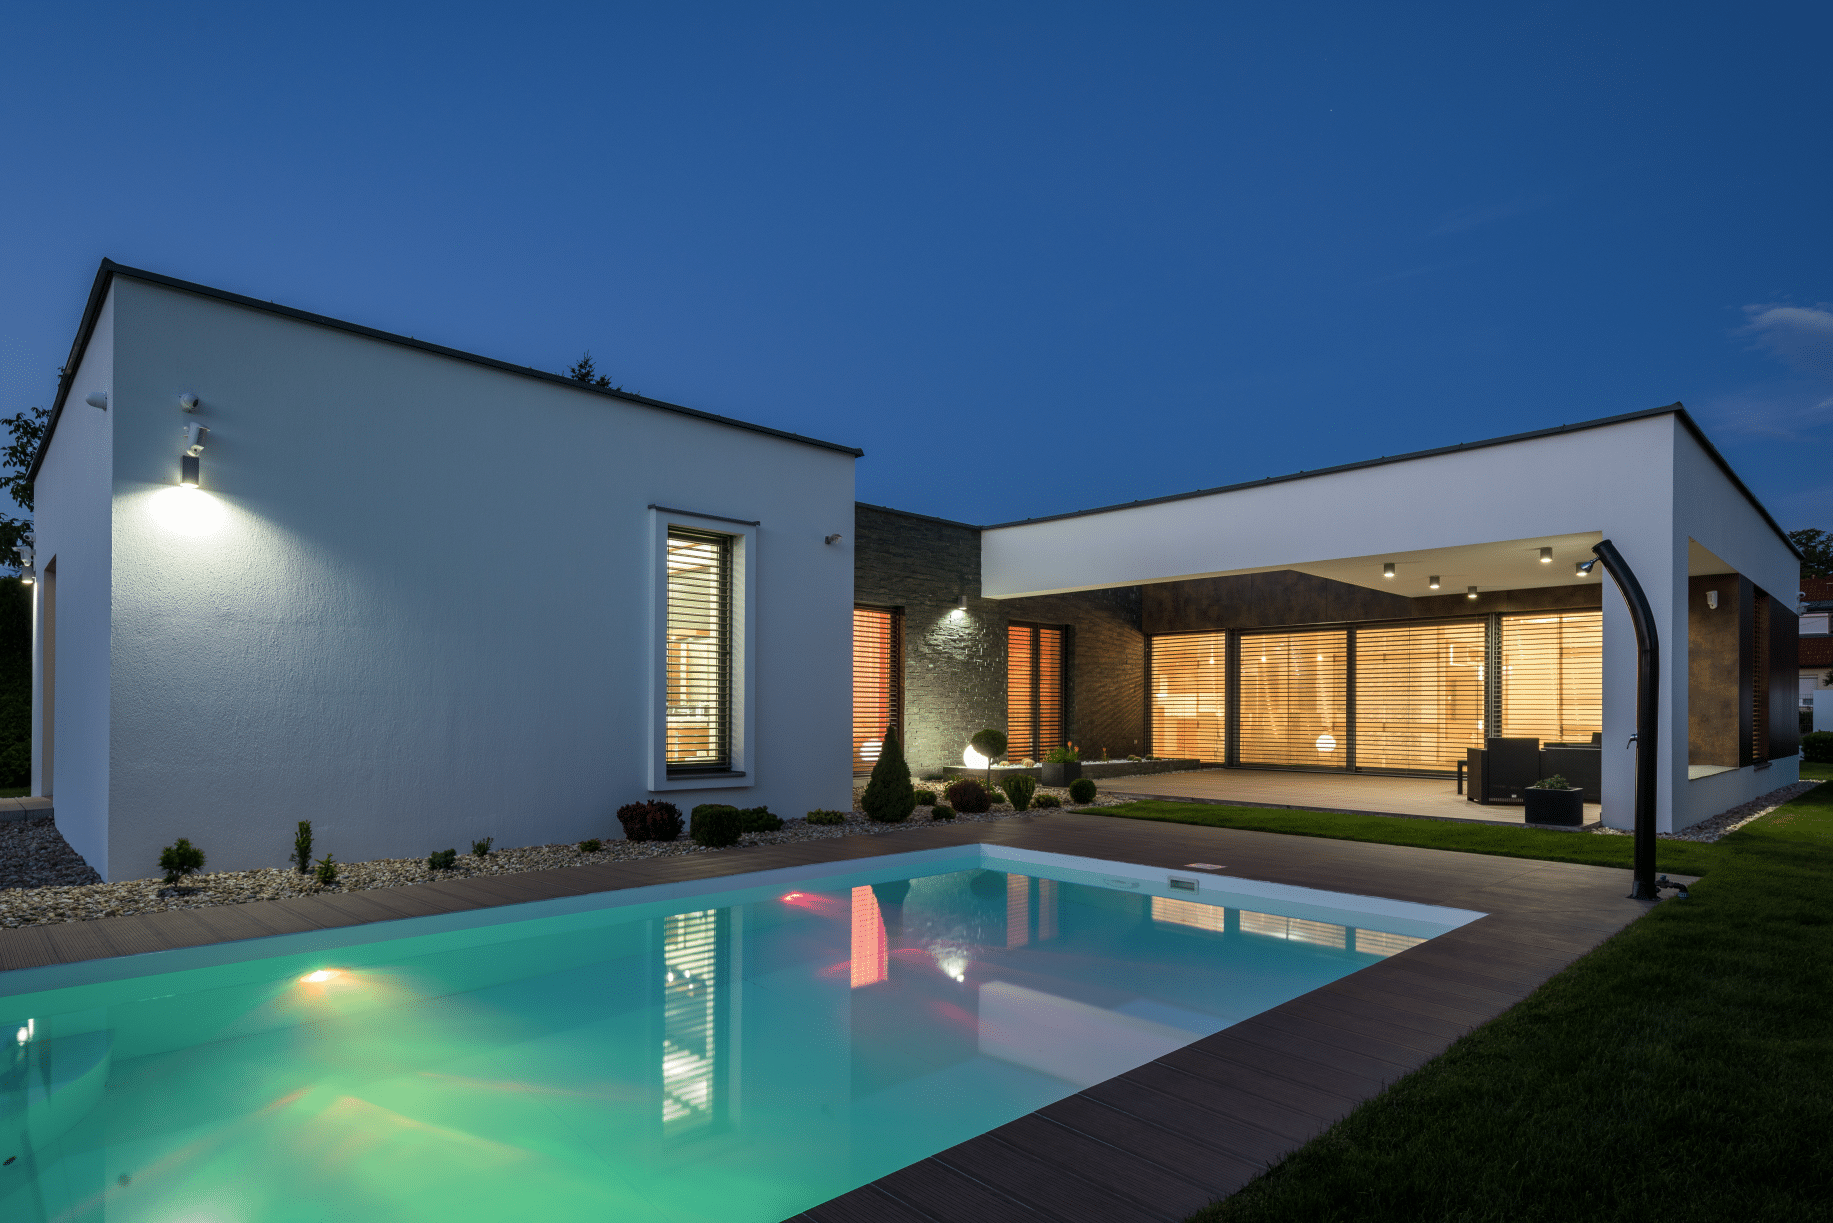 Modernes Smart-Home im Bauhaus-Stil mit Flachdach, beleuchtetem Pool, großer Terrasse sowie deckenhohen Fenstern und Schiebe-Terrassentüren von Internorm.